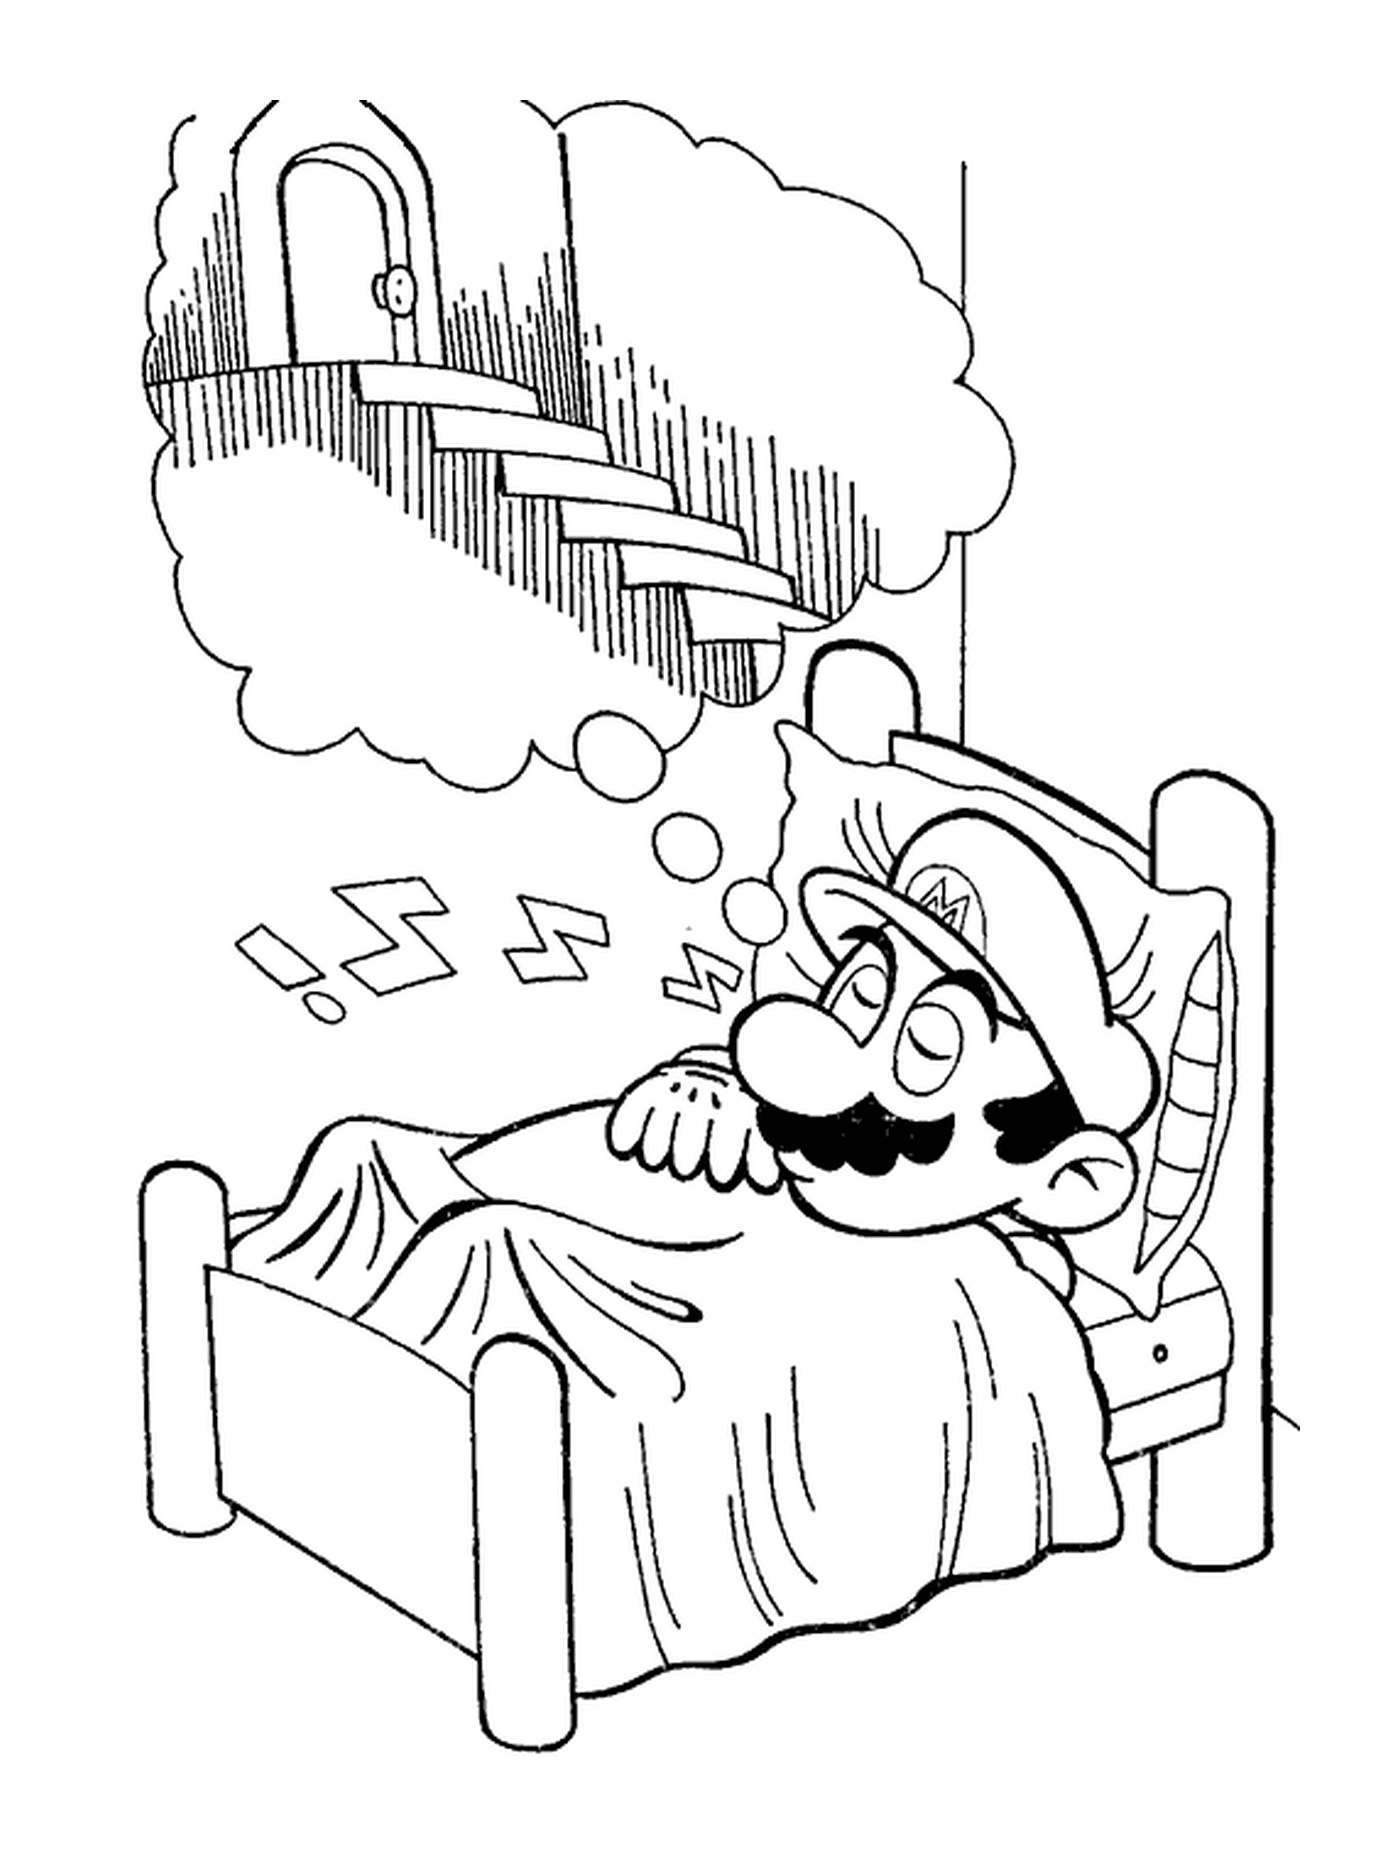  Mario dreams peacefully 